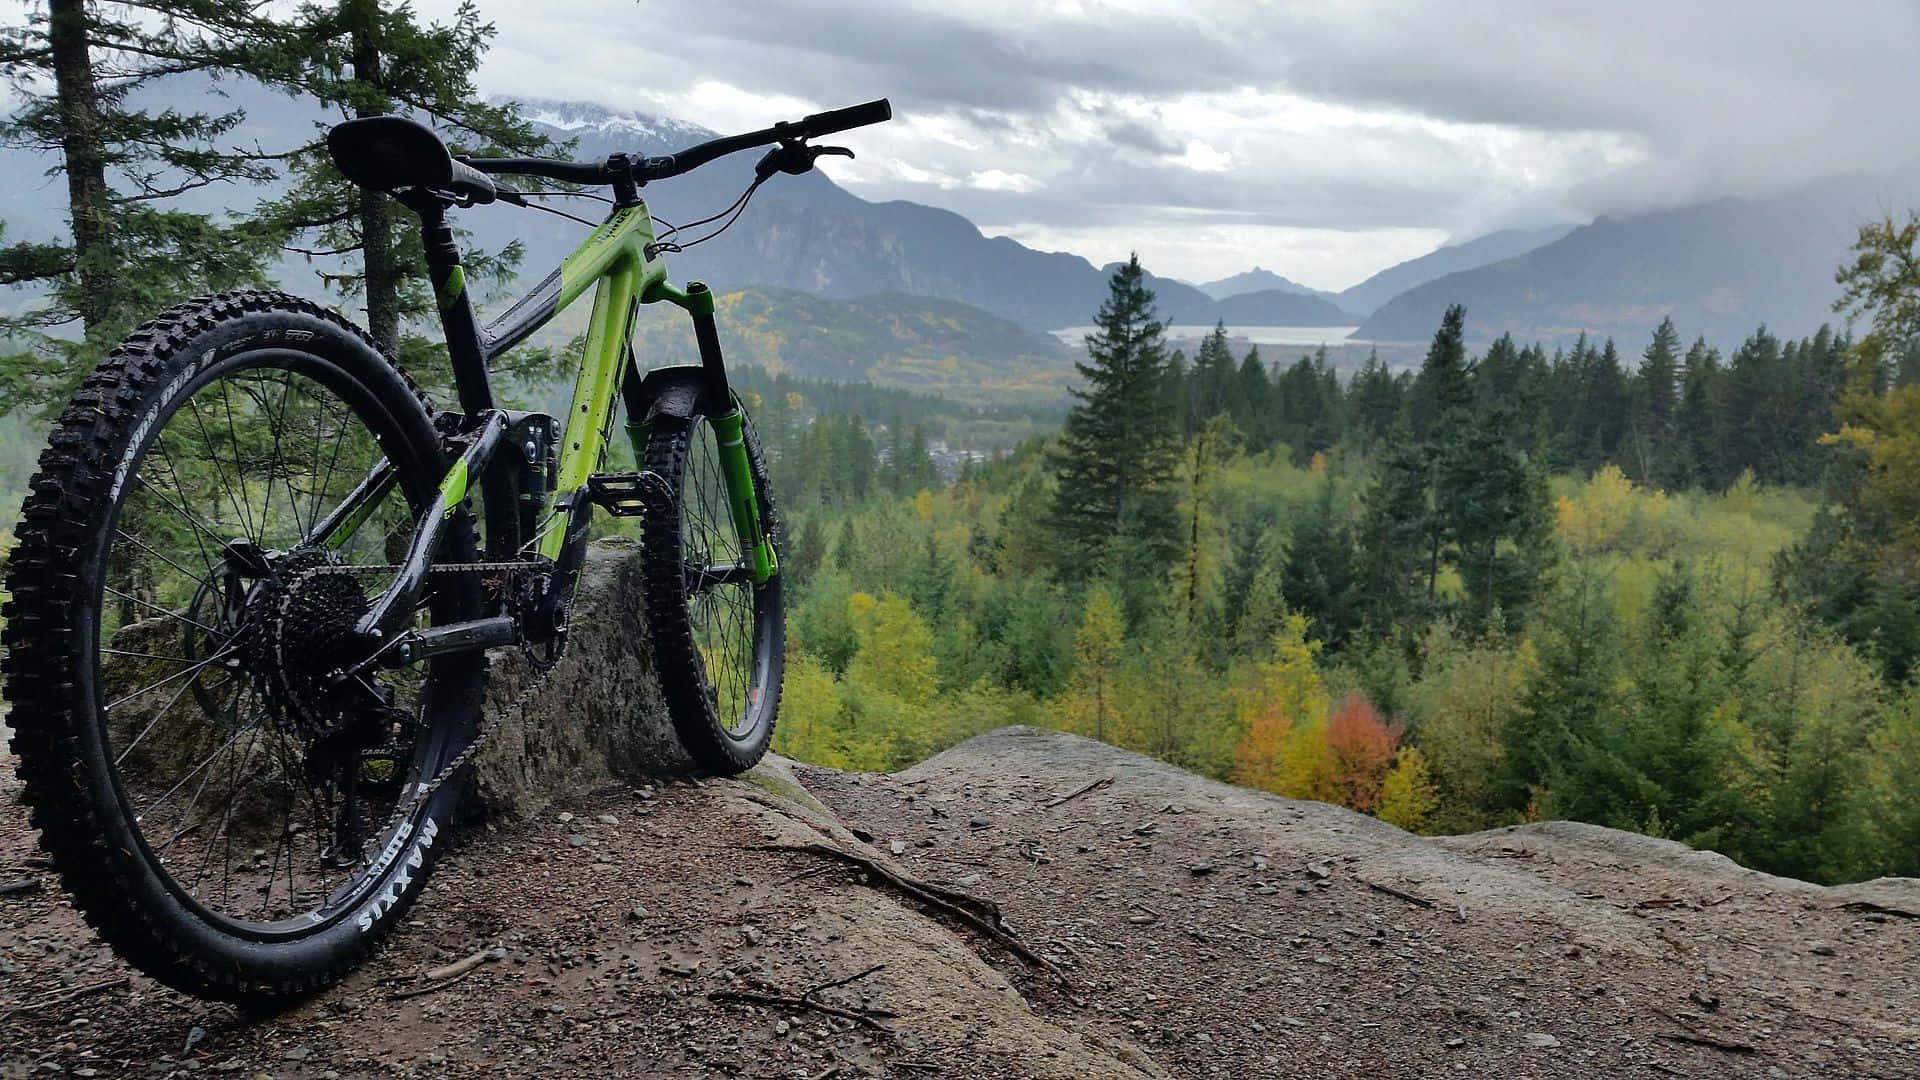 Mountain Bike Overlooking Scenic Valley.jpg Wallpaper